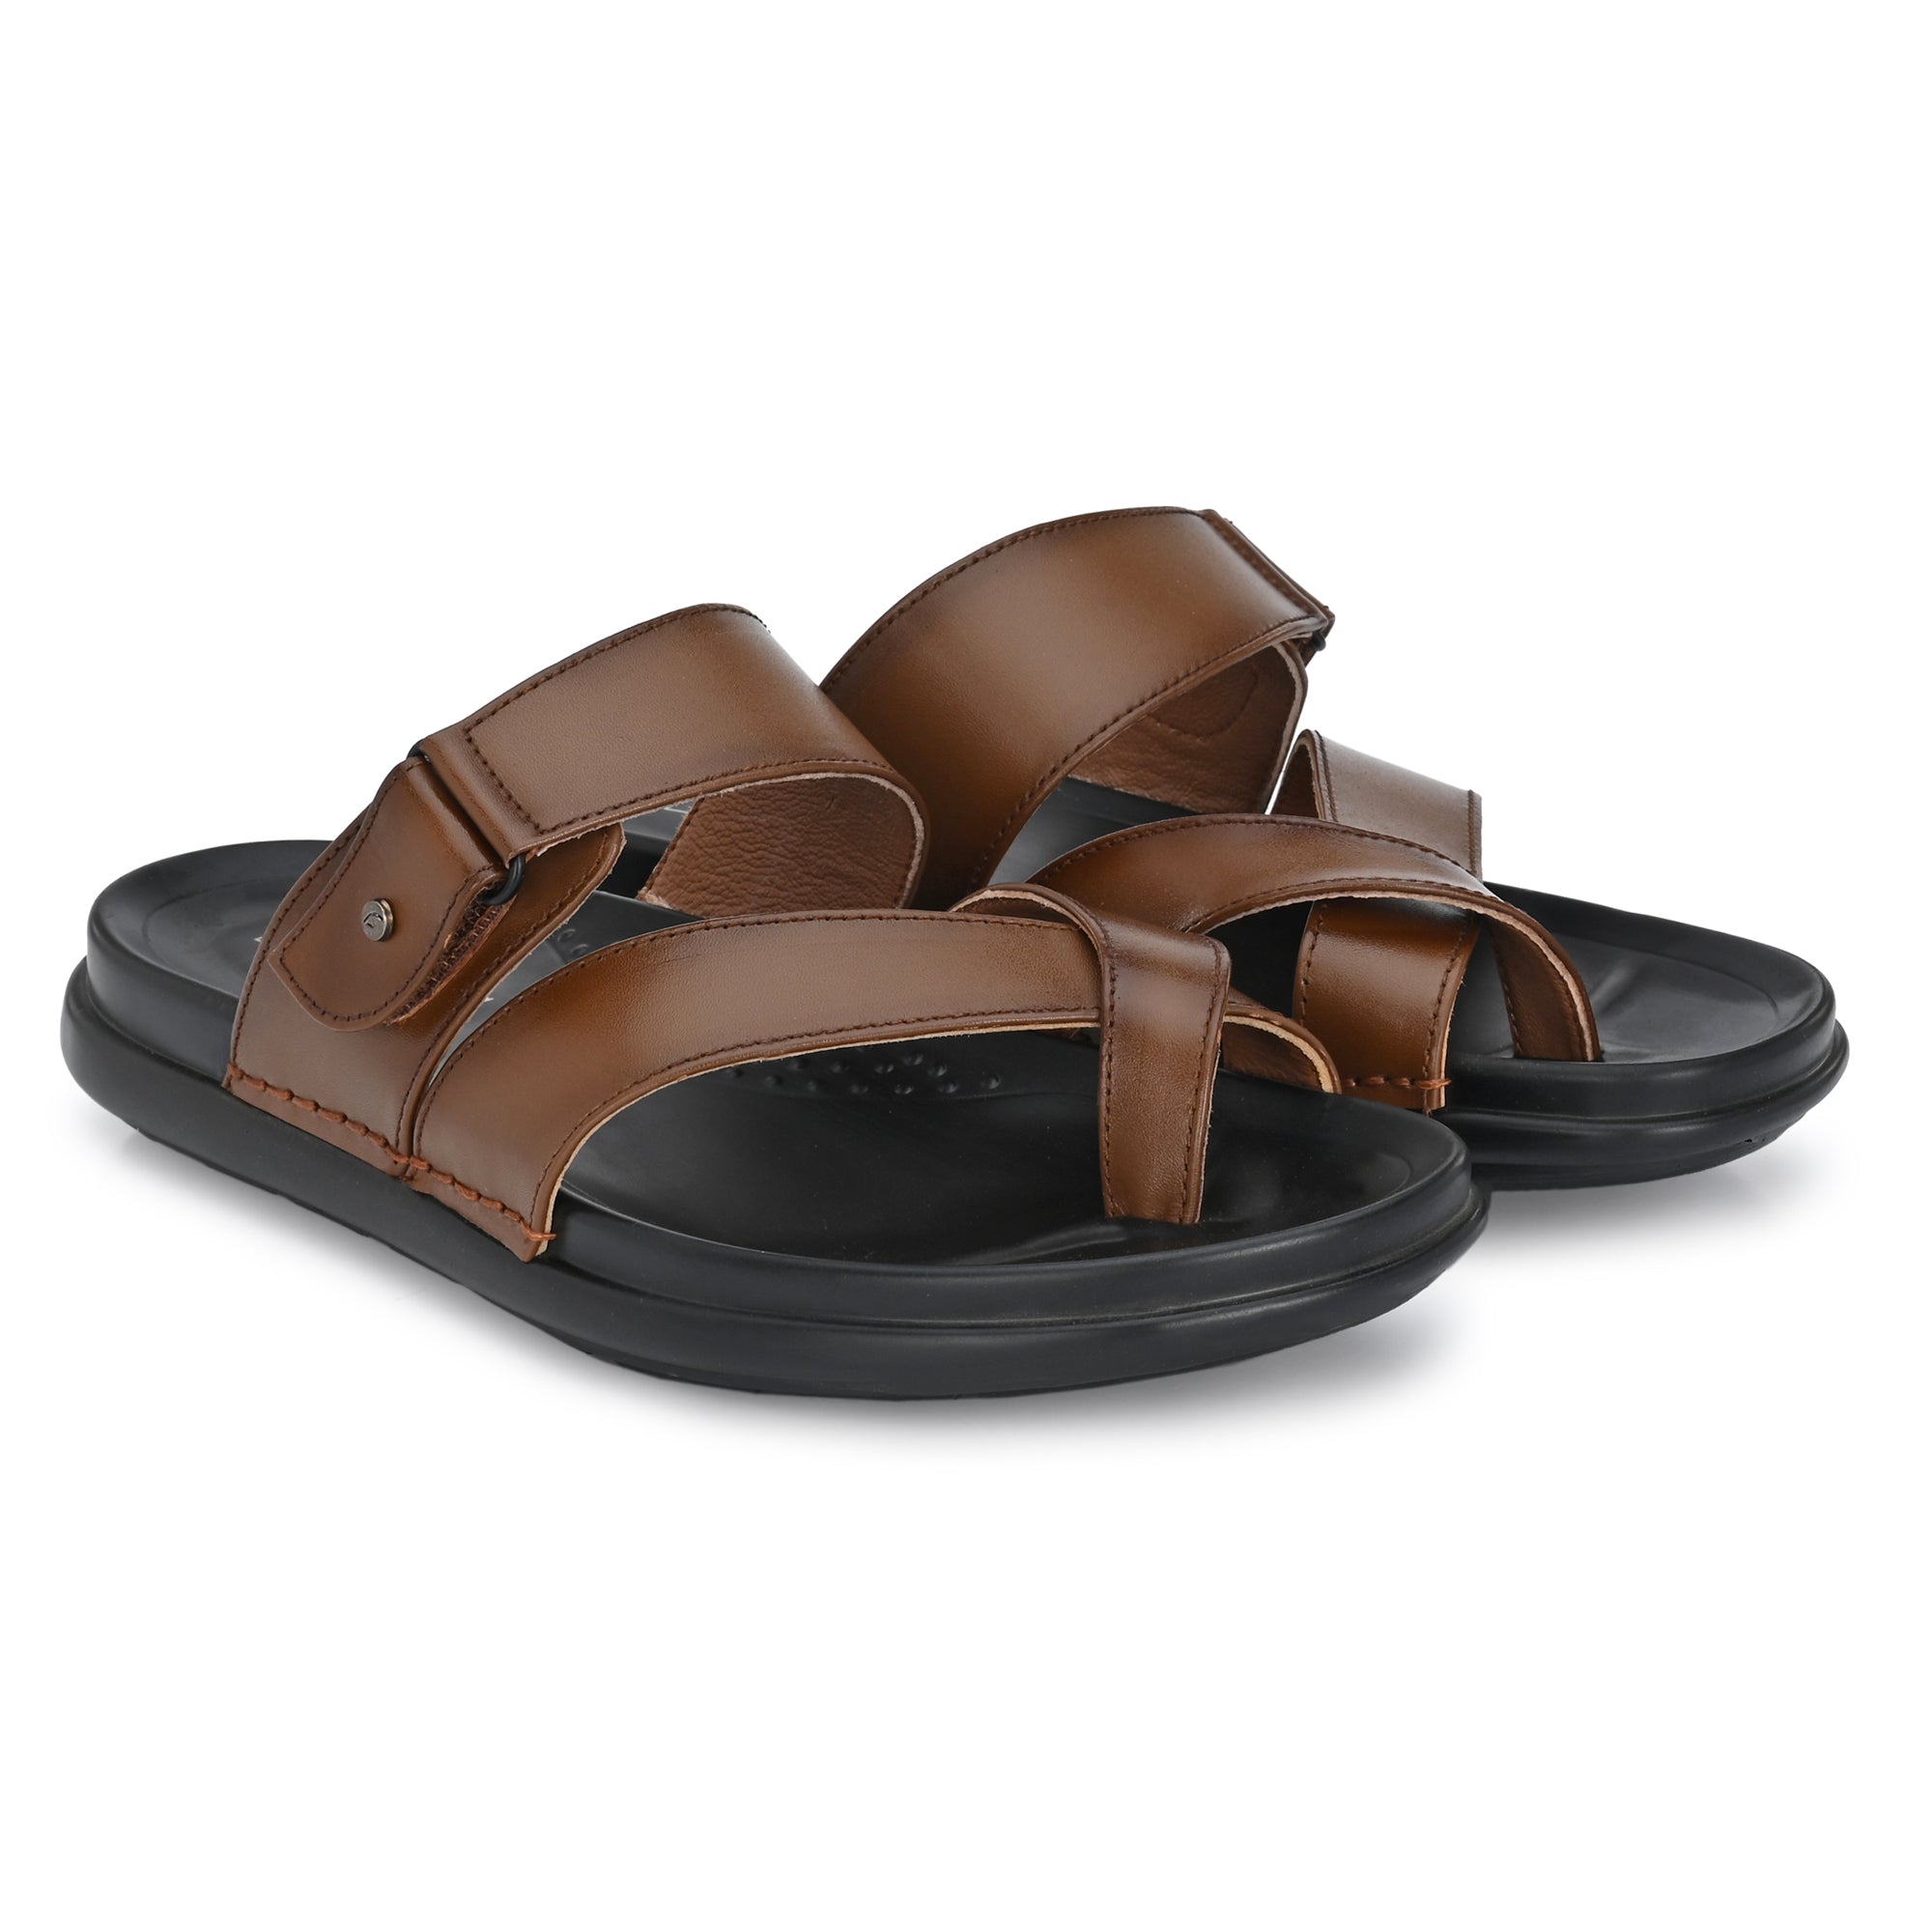 Beige Men Sandals Slippers Woodland - Buy Beige Men Sandals Slippers  Woodland online in India